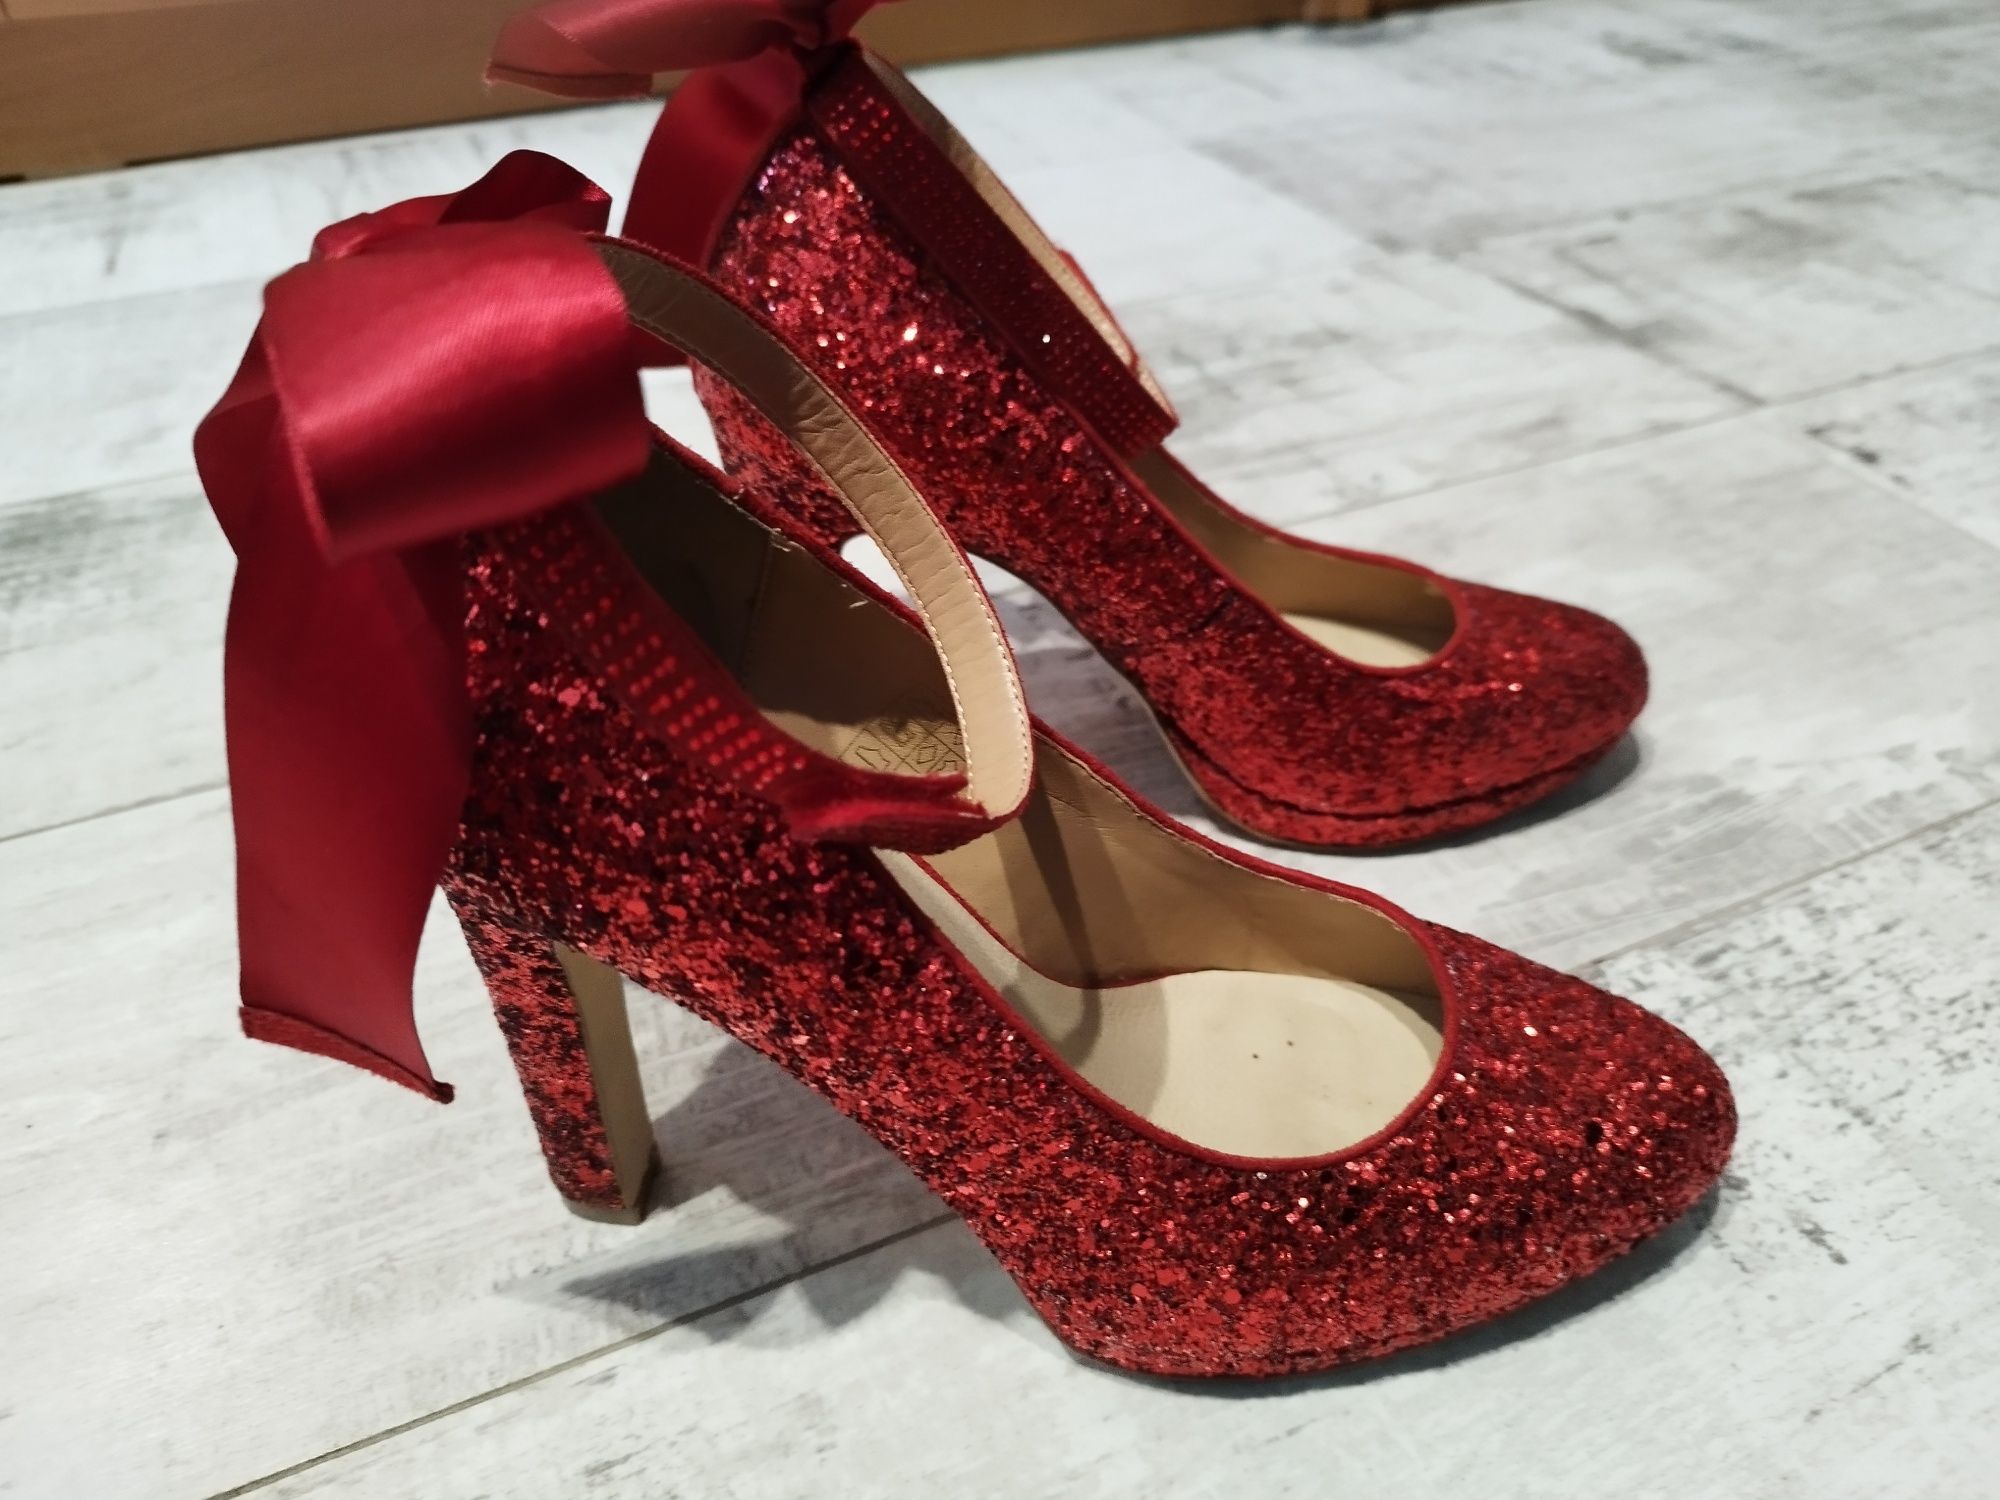 Buty szpilki piękne czerwone